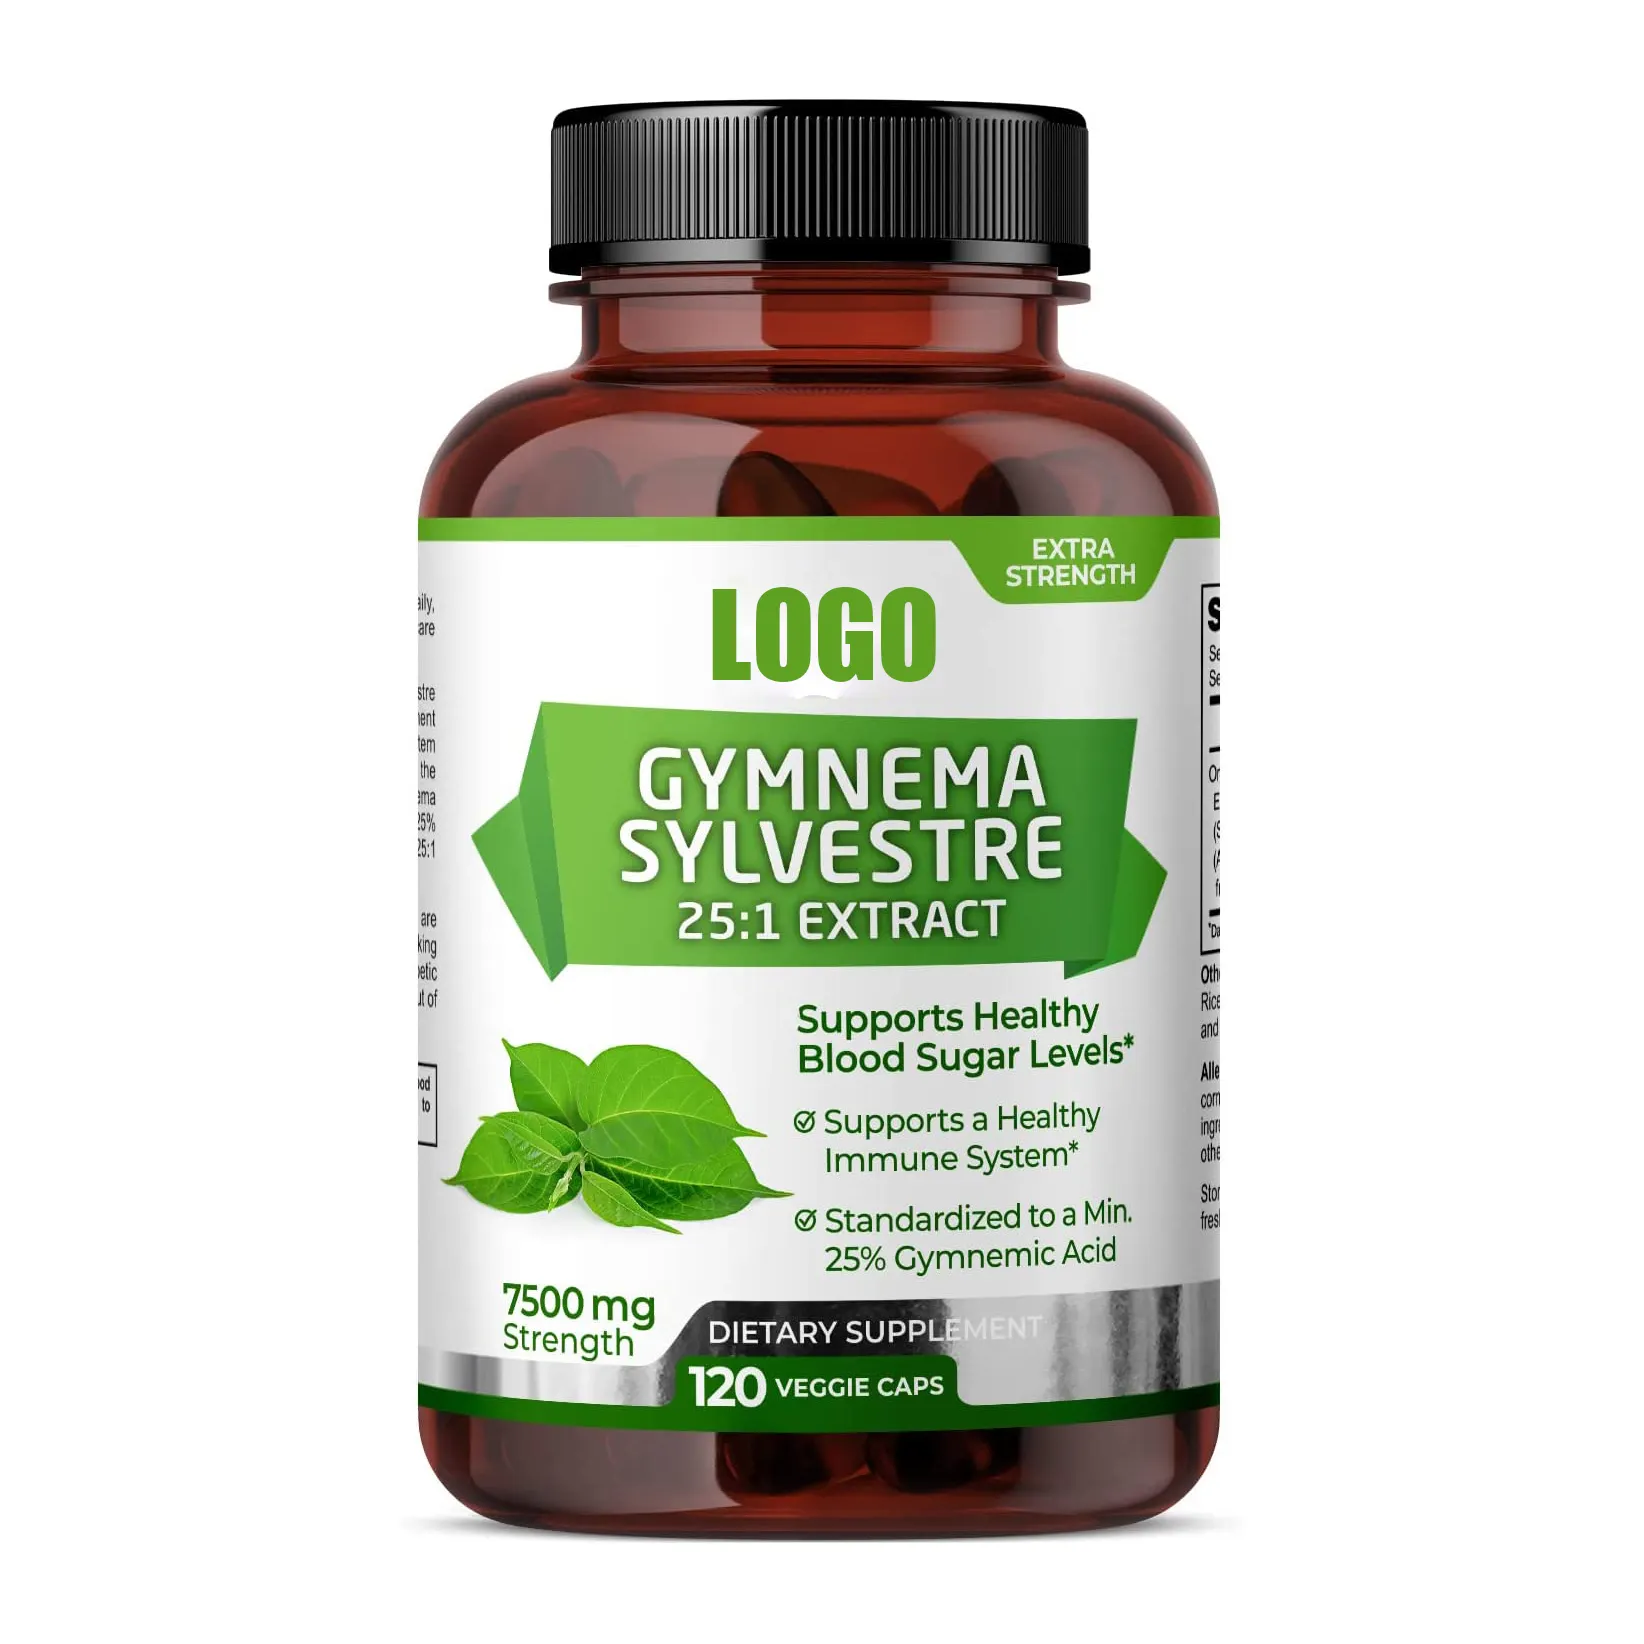 Gymnema Sylvestre Vegan kapsülleri sağlıklı kan şekeri seviyelerini doğal olarak dengeli glikoz metabolizmasını teşvik eder